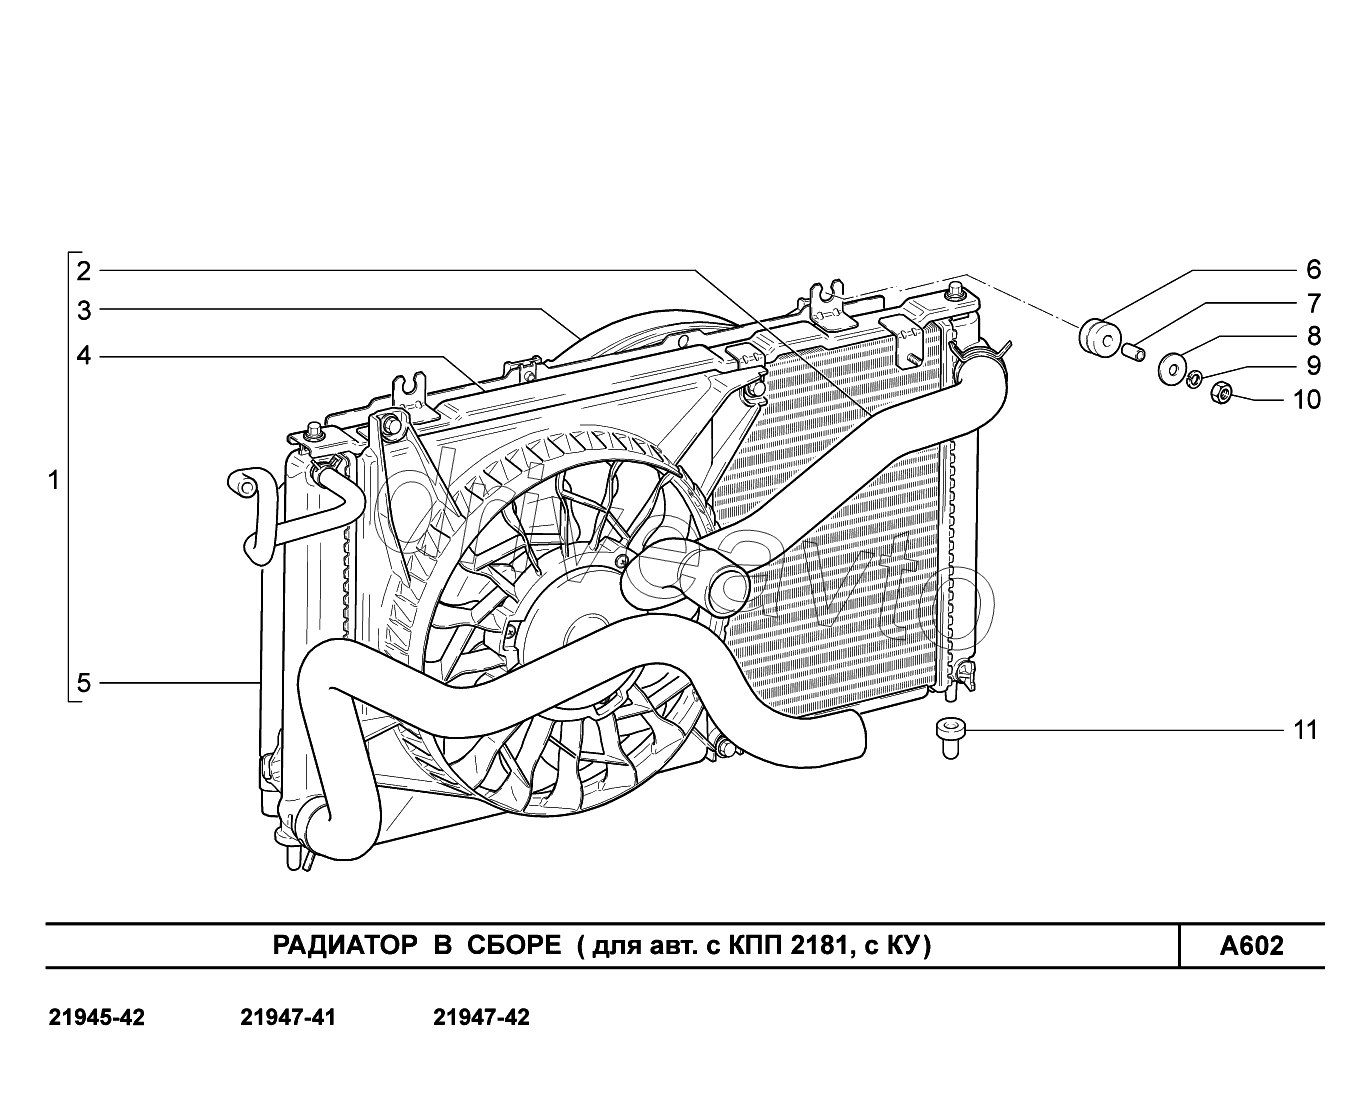 A602. Радиатор в сборе (для авт. с КПП 2181, с КУ)